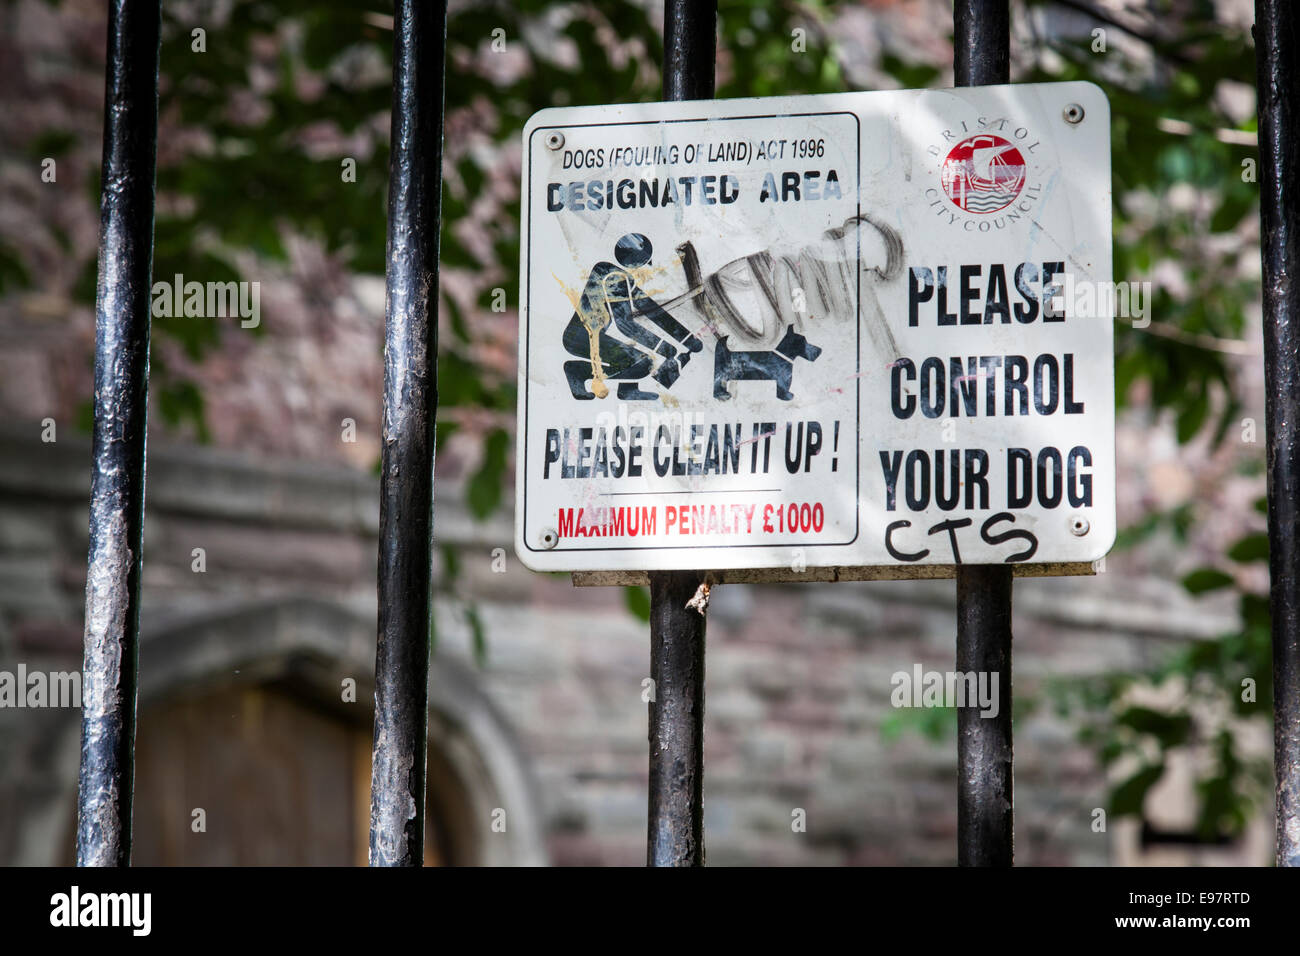 Schmutzig und mit einigen Graffiti, fragt dieser Bekanntmachung Hundebesitzer ihre Haustiere zu kontrollieren und Aufräumen nach ihnen von einer Strafe bedroht. Stockfoto